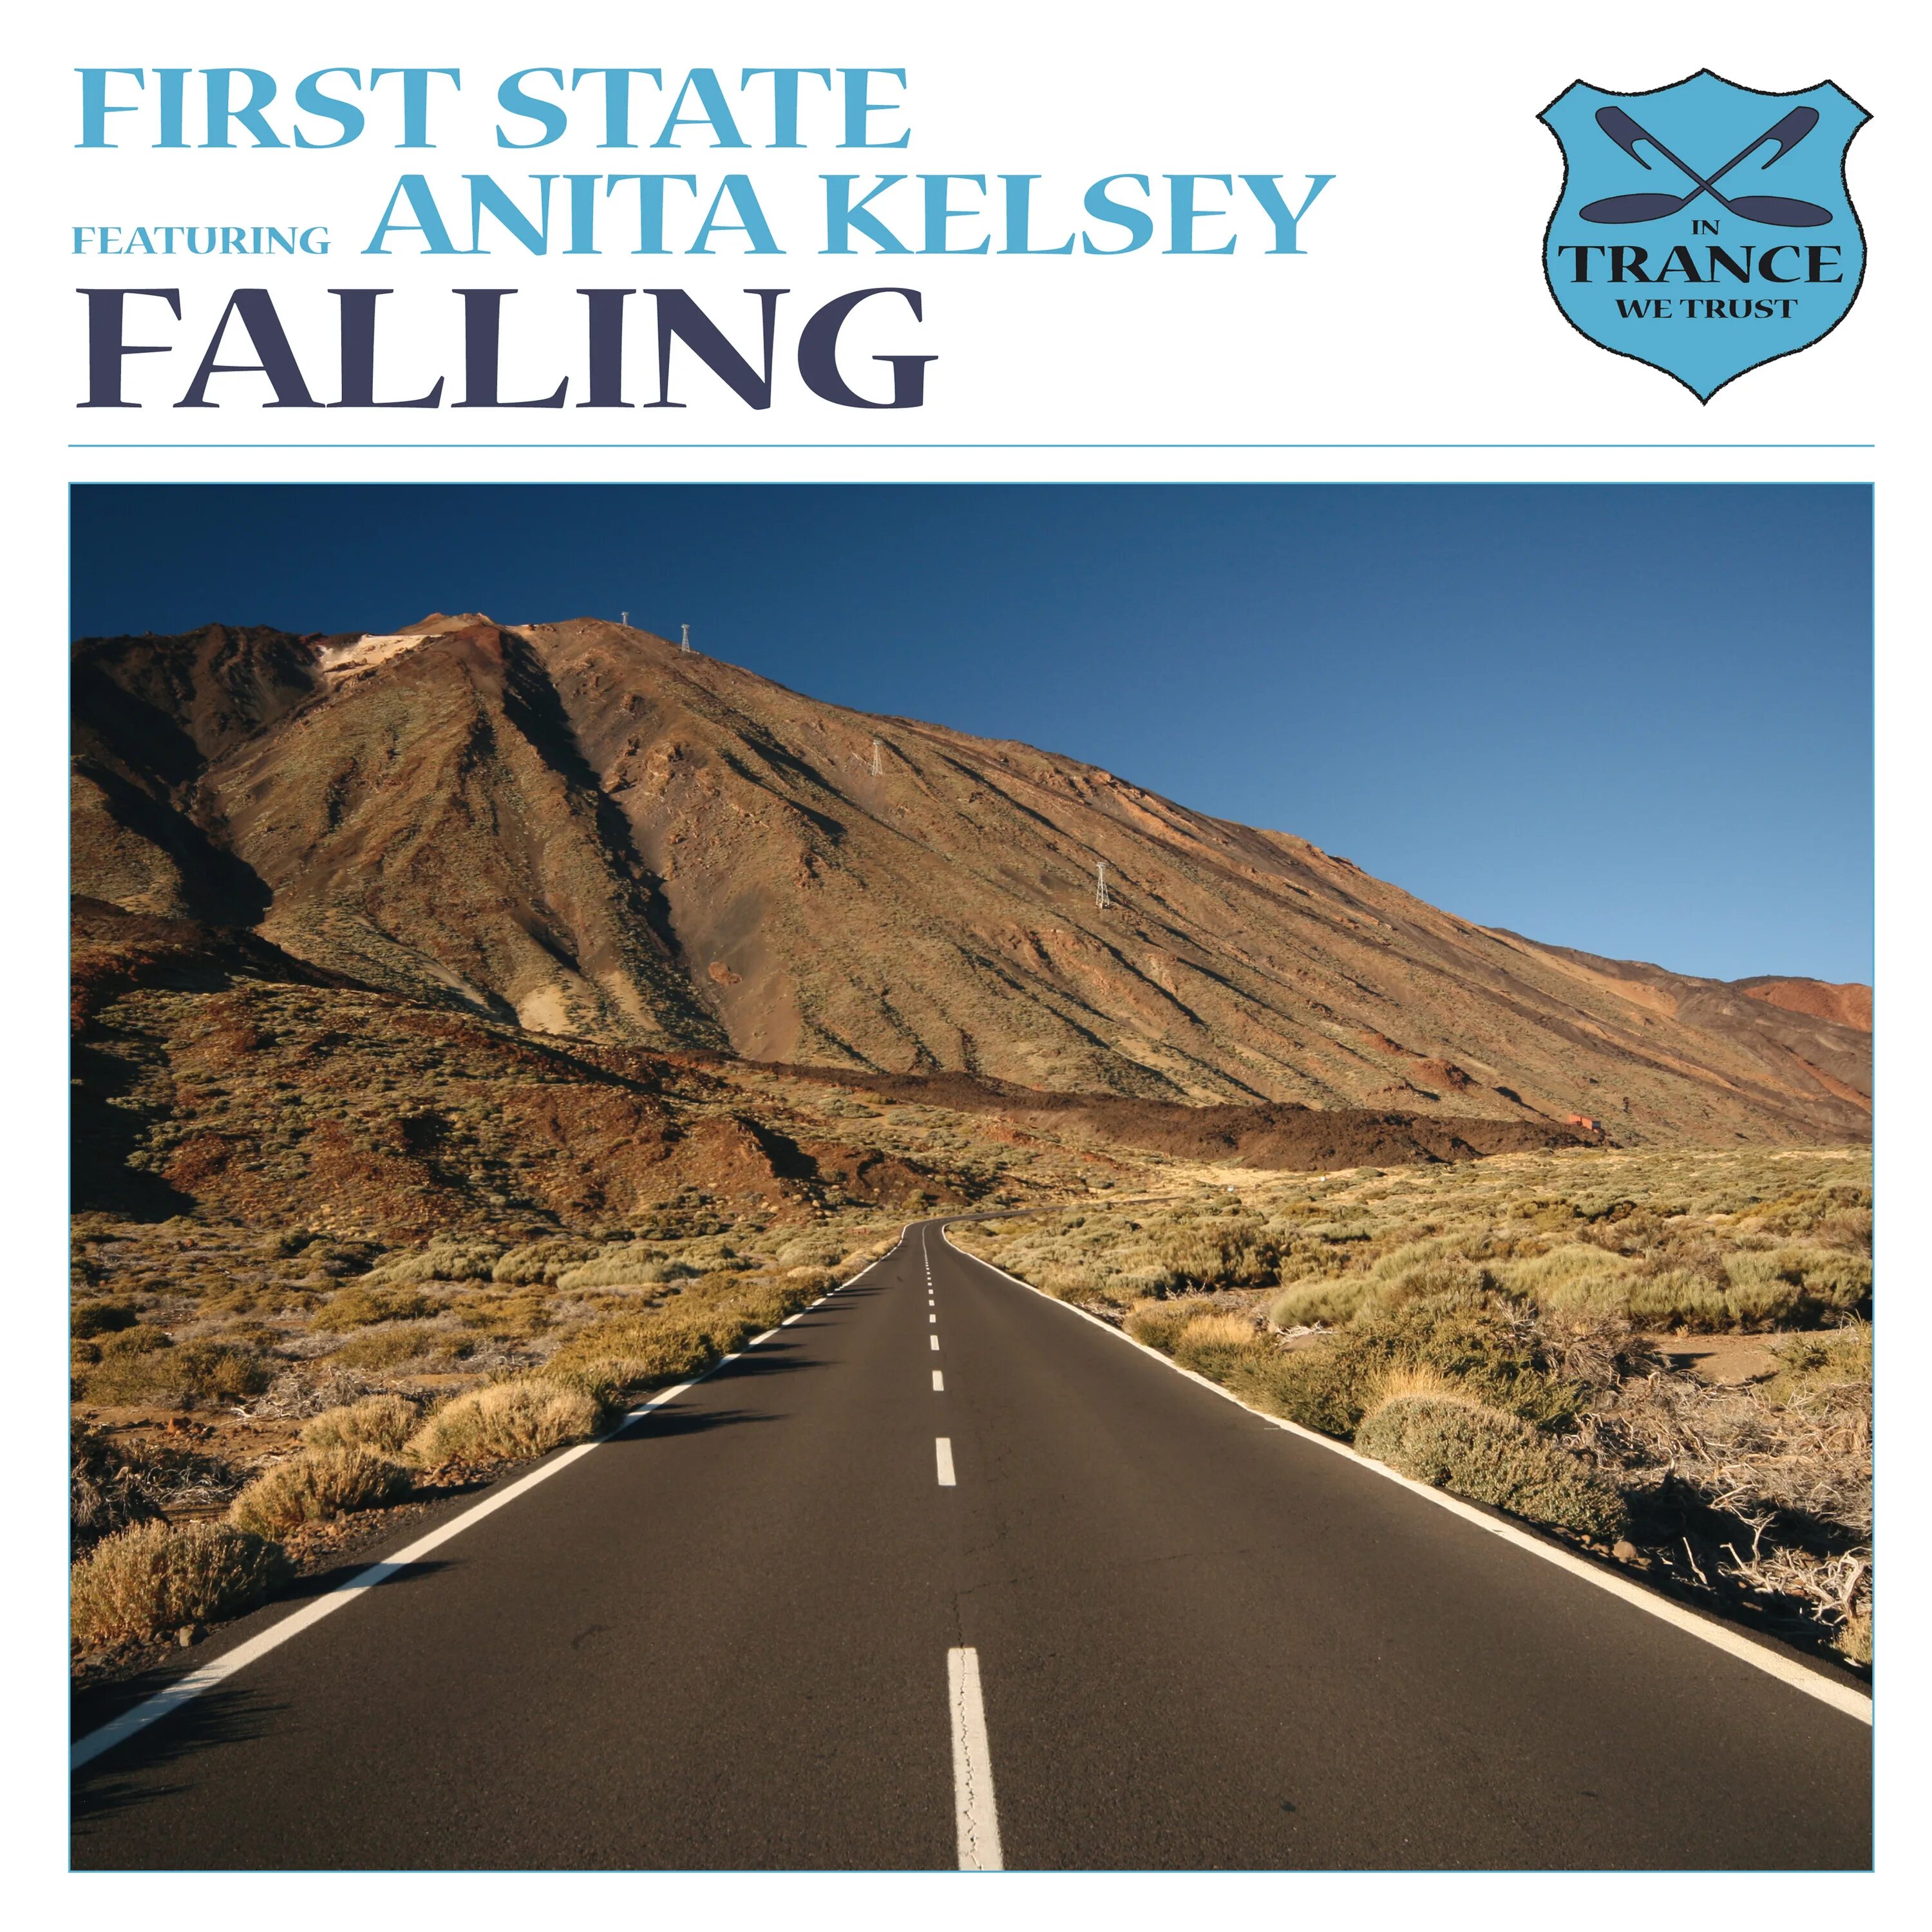 First State. Anita Kelsey - Sway. First State feat. Anita Kelsey - Falling (Daniel Skyver Remix). Falling state